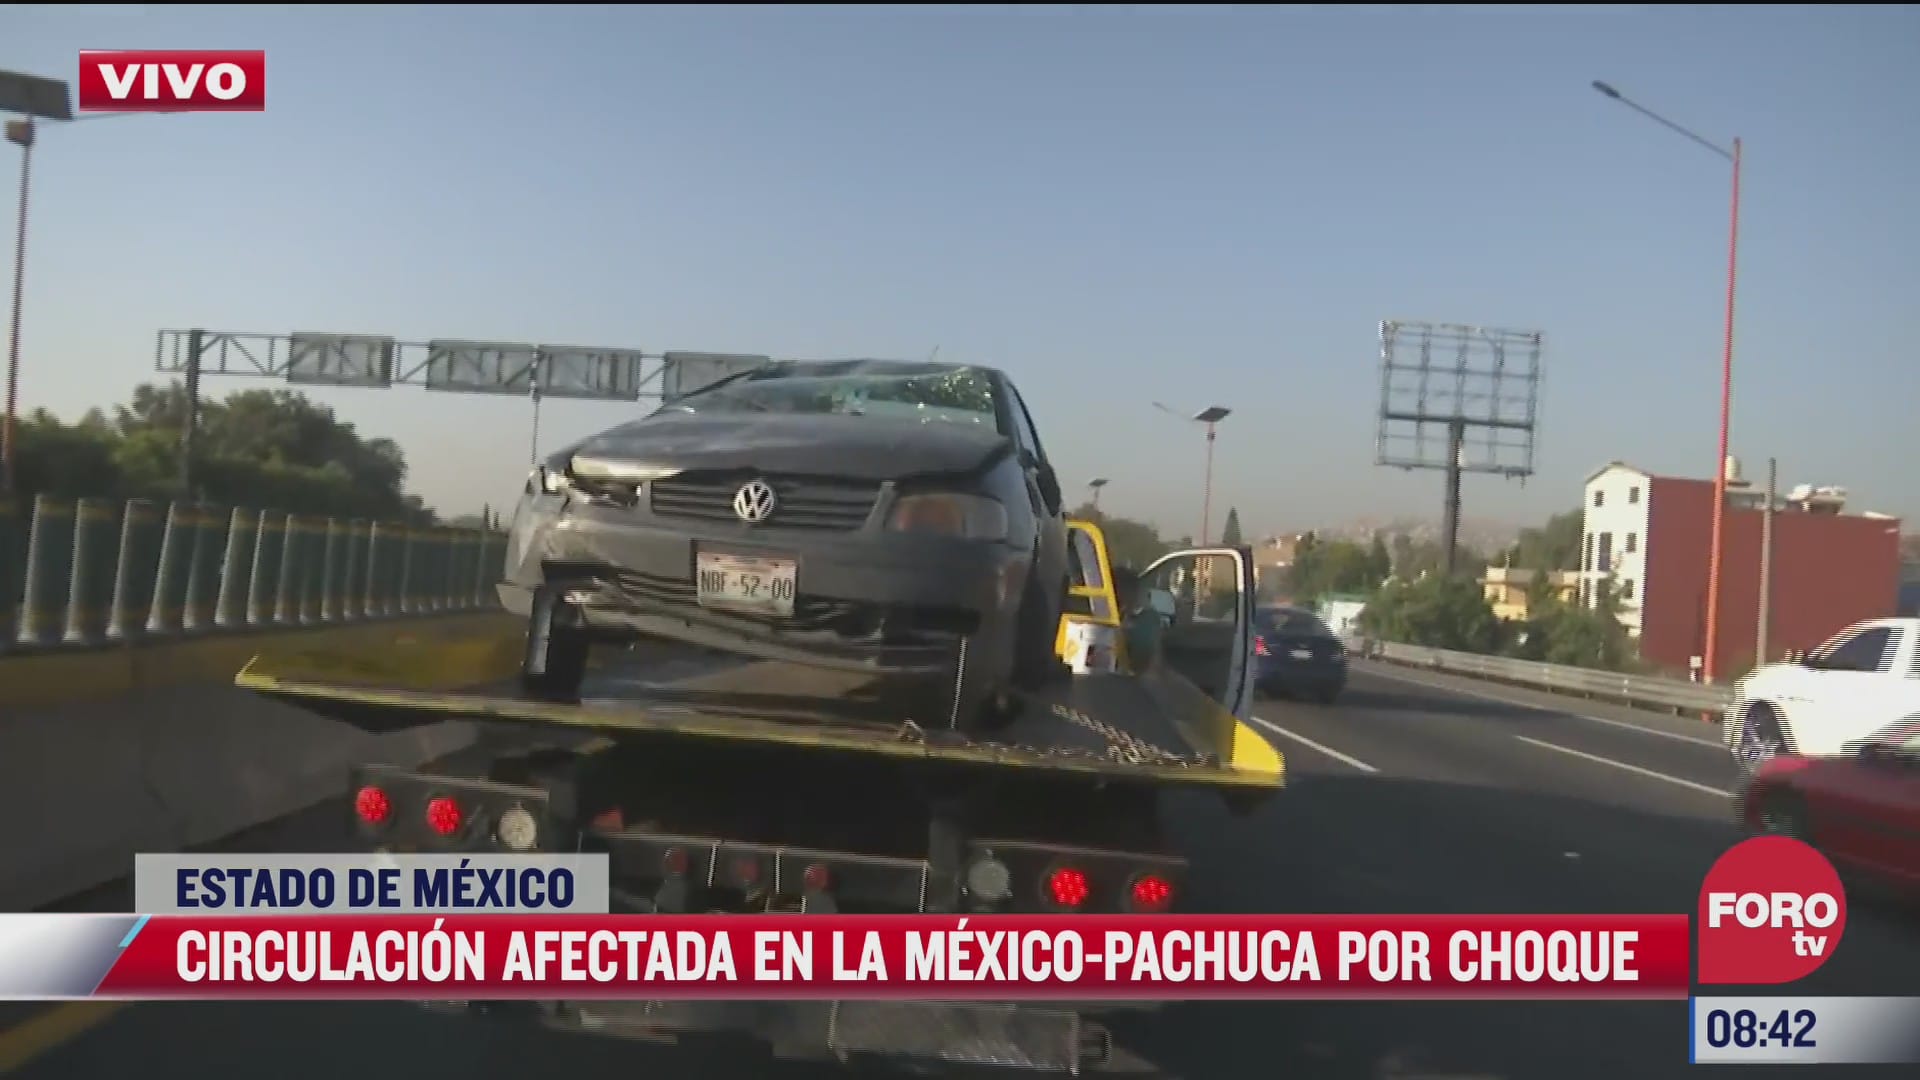 choque vehicular afecta la circulacion en la mexico pachuca